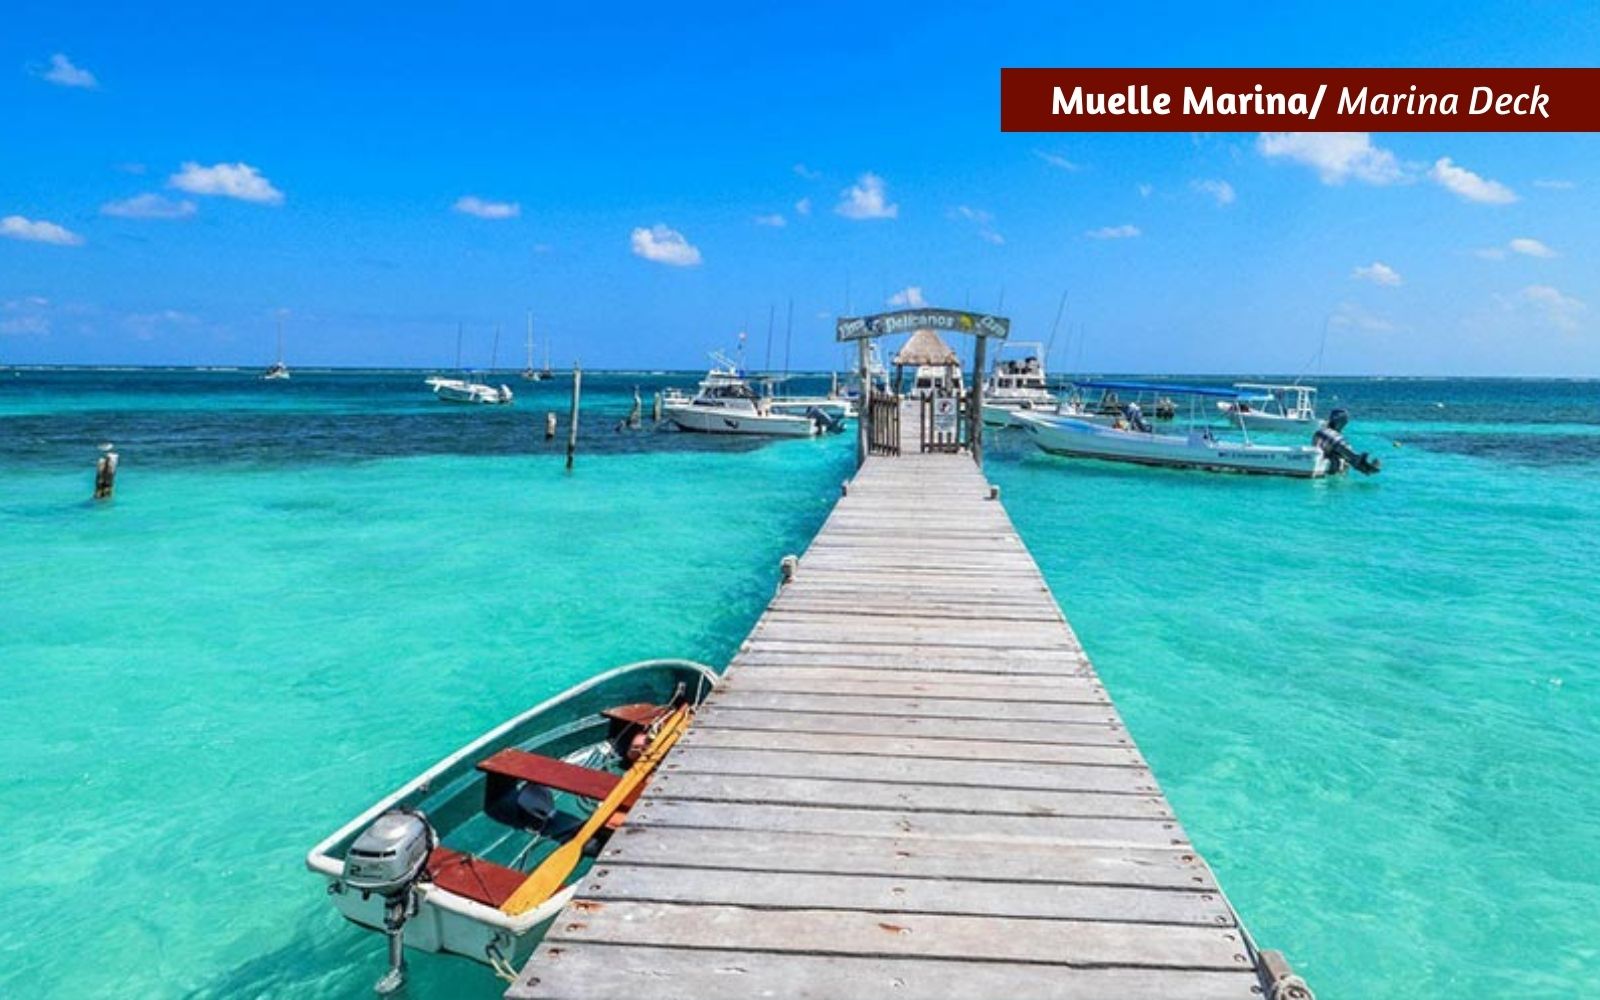 Departamento con vista al mar, acceso a la playa, pet-friendly, en venta Puerto Morelos.